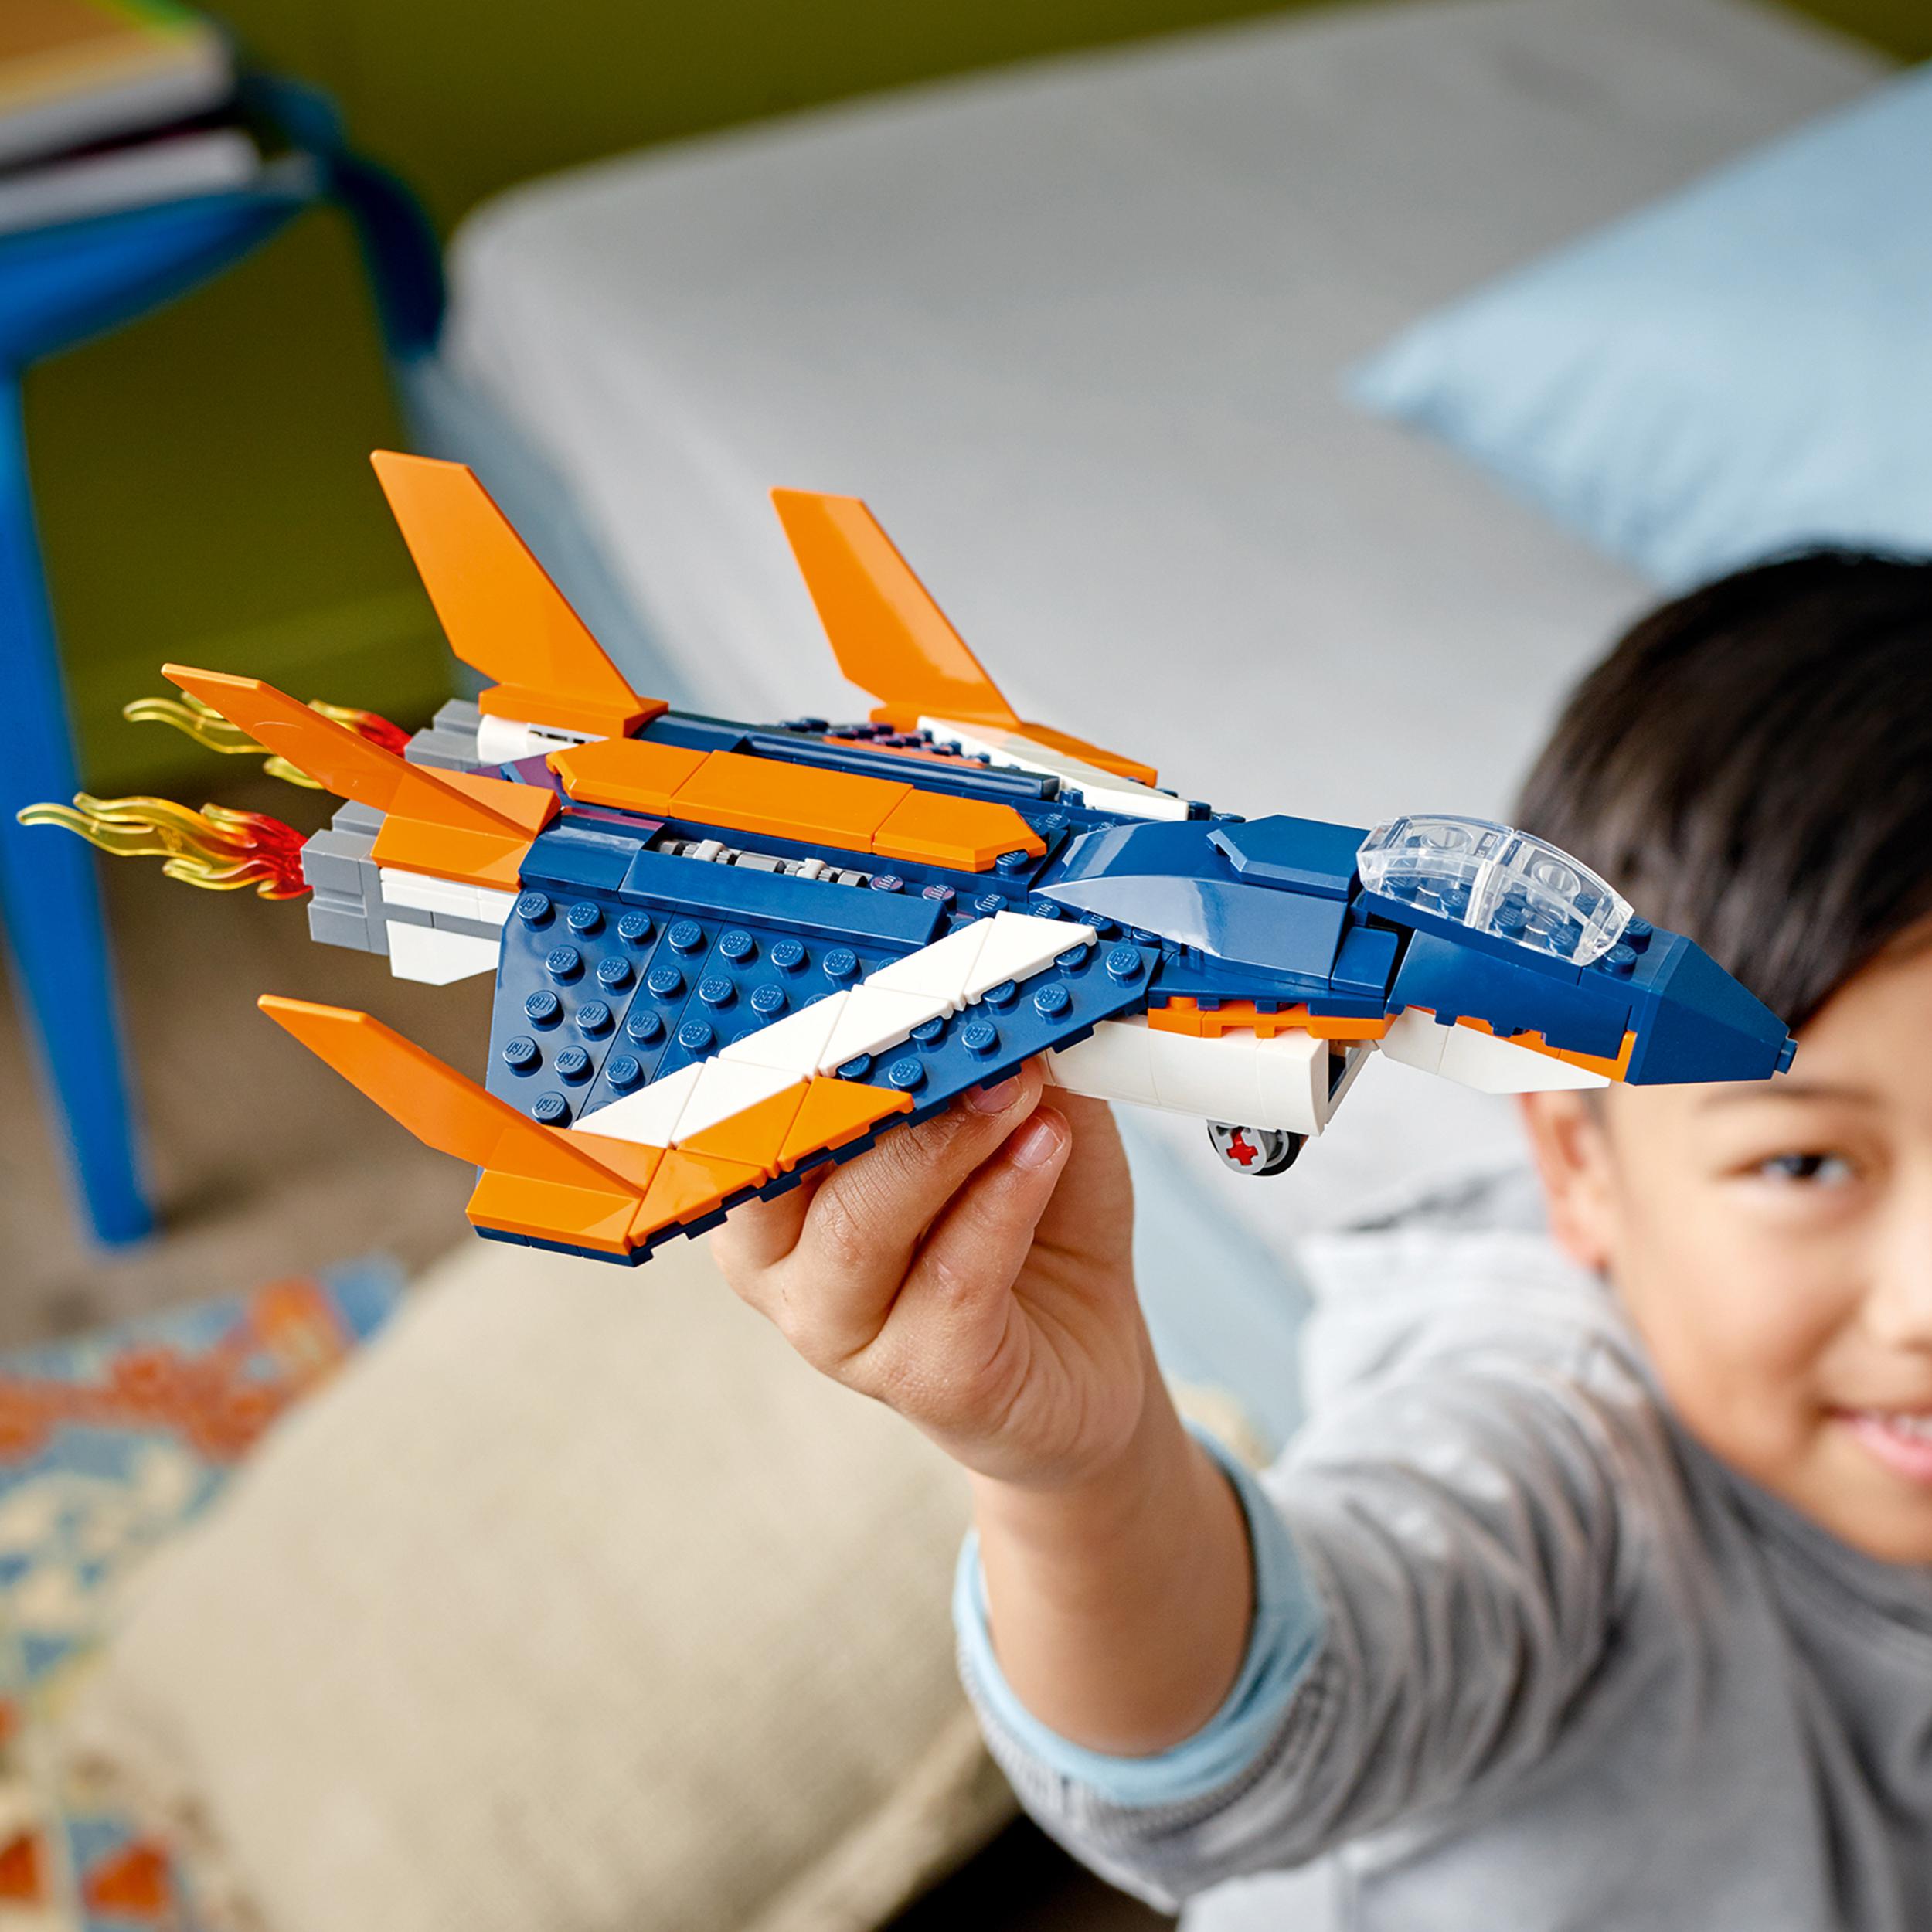 Lego creator 31126 3in1 jet supersonico, giocattoli creativi per bambini di 7+ anni con aereo, elicottero e motoscafo - LEGO CREATOR, Lego